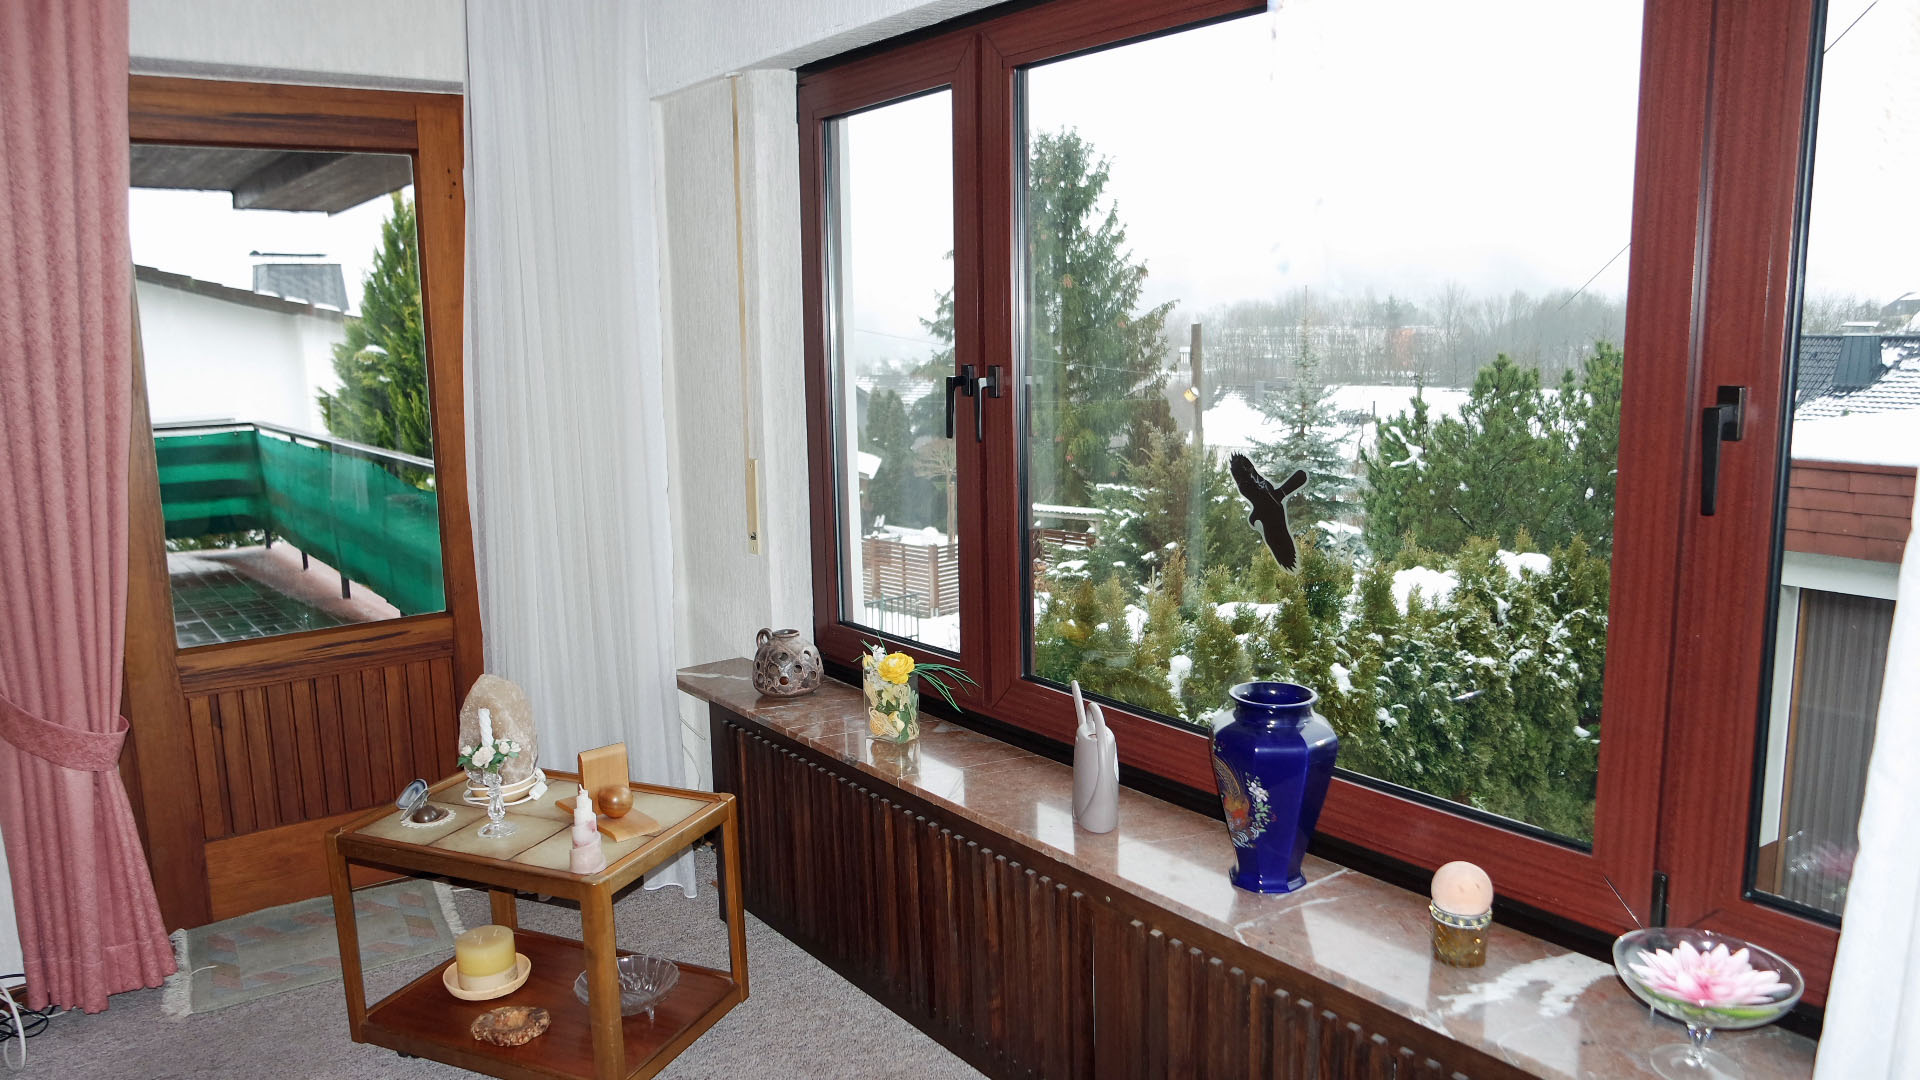 Morsbach: Beliebte Wohnlage "Höhenweg" Wohnhaus mit Doppelgarage, Wohnzimmer mit Panoramafenster und Tür...